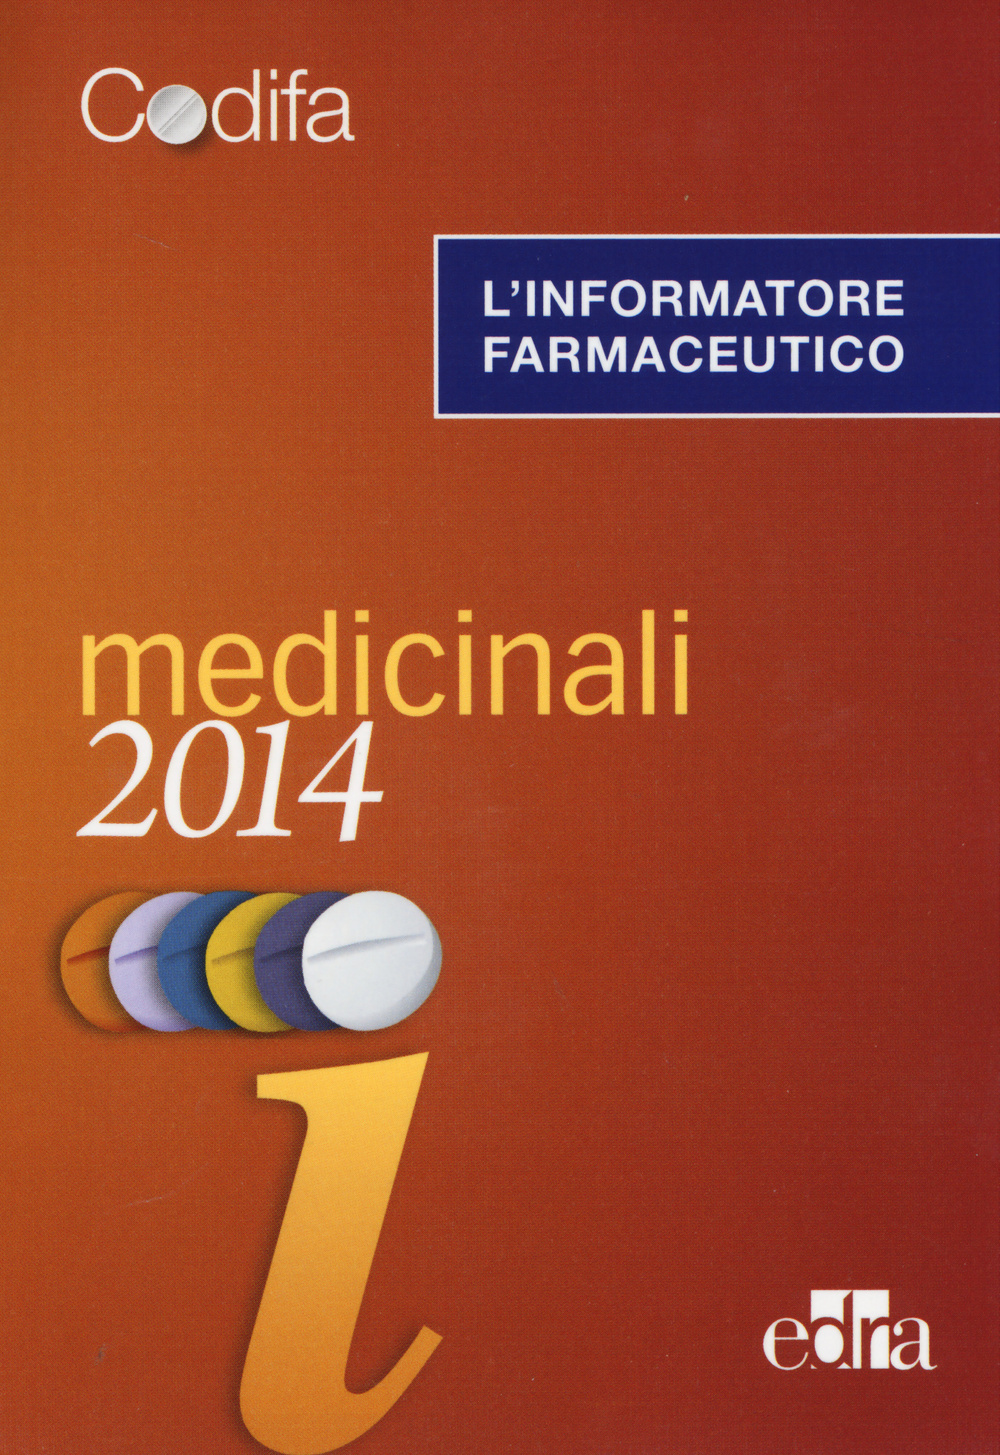 L'informatore farmaceutico 2014. Medicinali